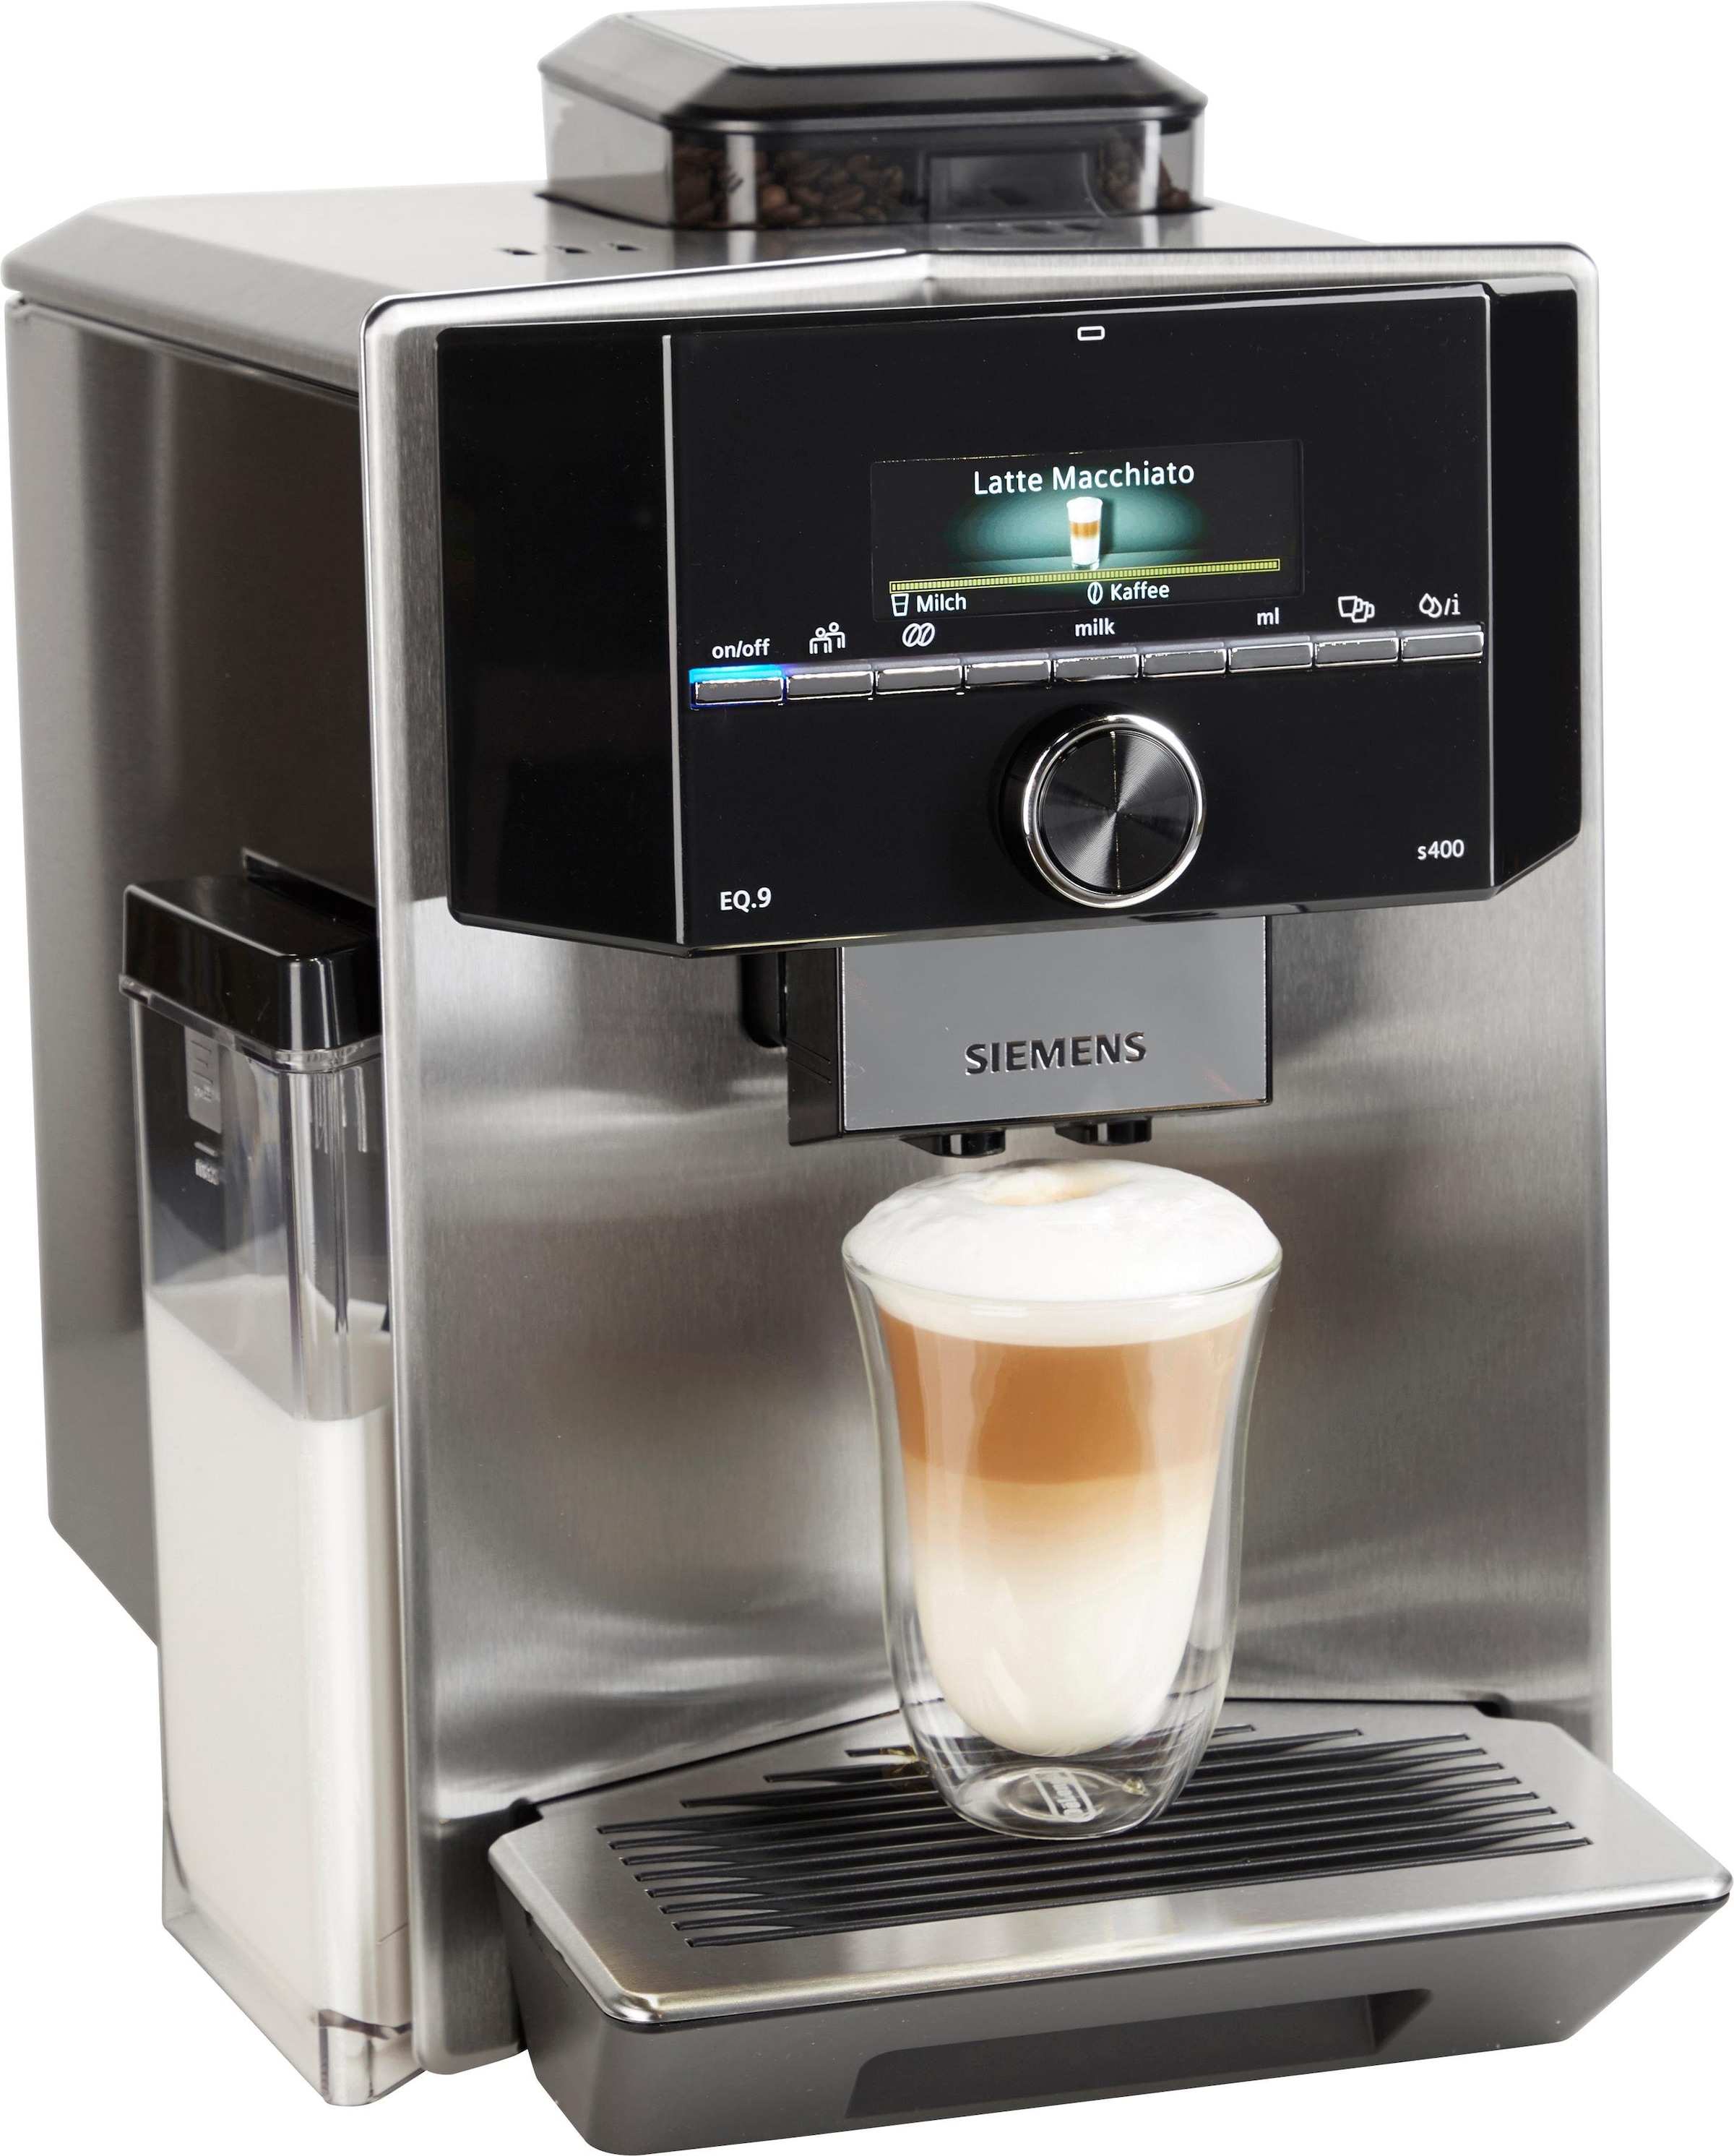 SIEMENS Kaffeevollautomat »EQ.9 s400 TI924501DE«, Shop Profile Online leise, OTTO zu bis automatische extra im Milchsystem-Reinigung, 6